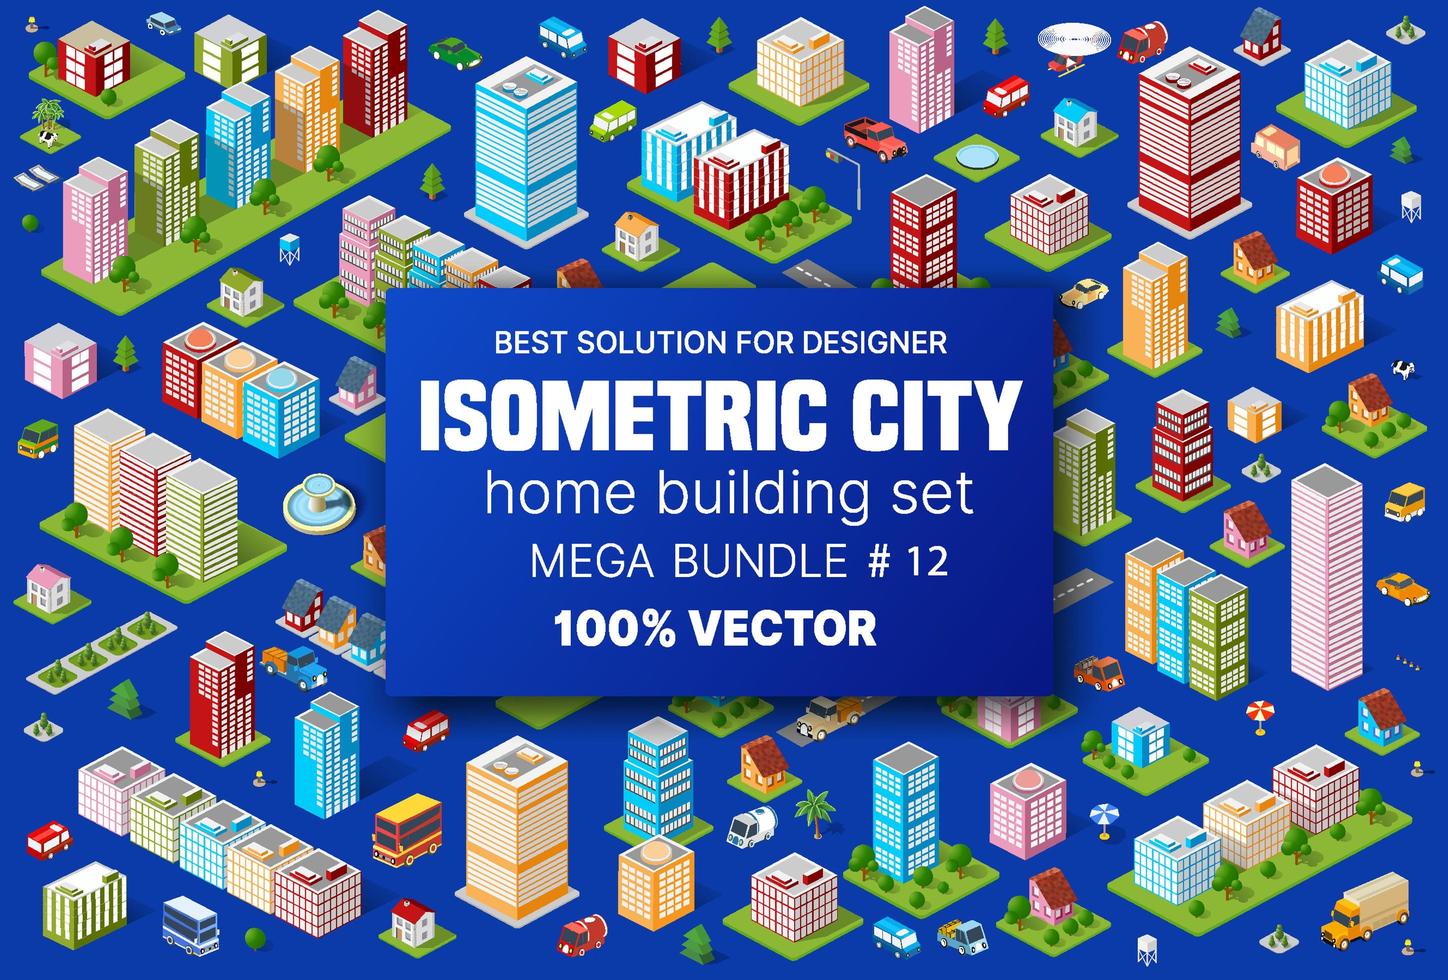 A construção de conjuntos isométricos abriga ícones de módulos de blocos de áreas da construção da cidade e desenho da perspectiva urbana de desenho do ambiente de arquitetura vetor